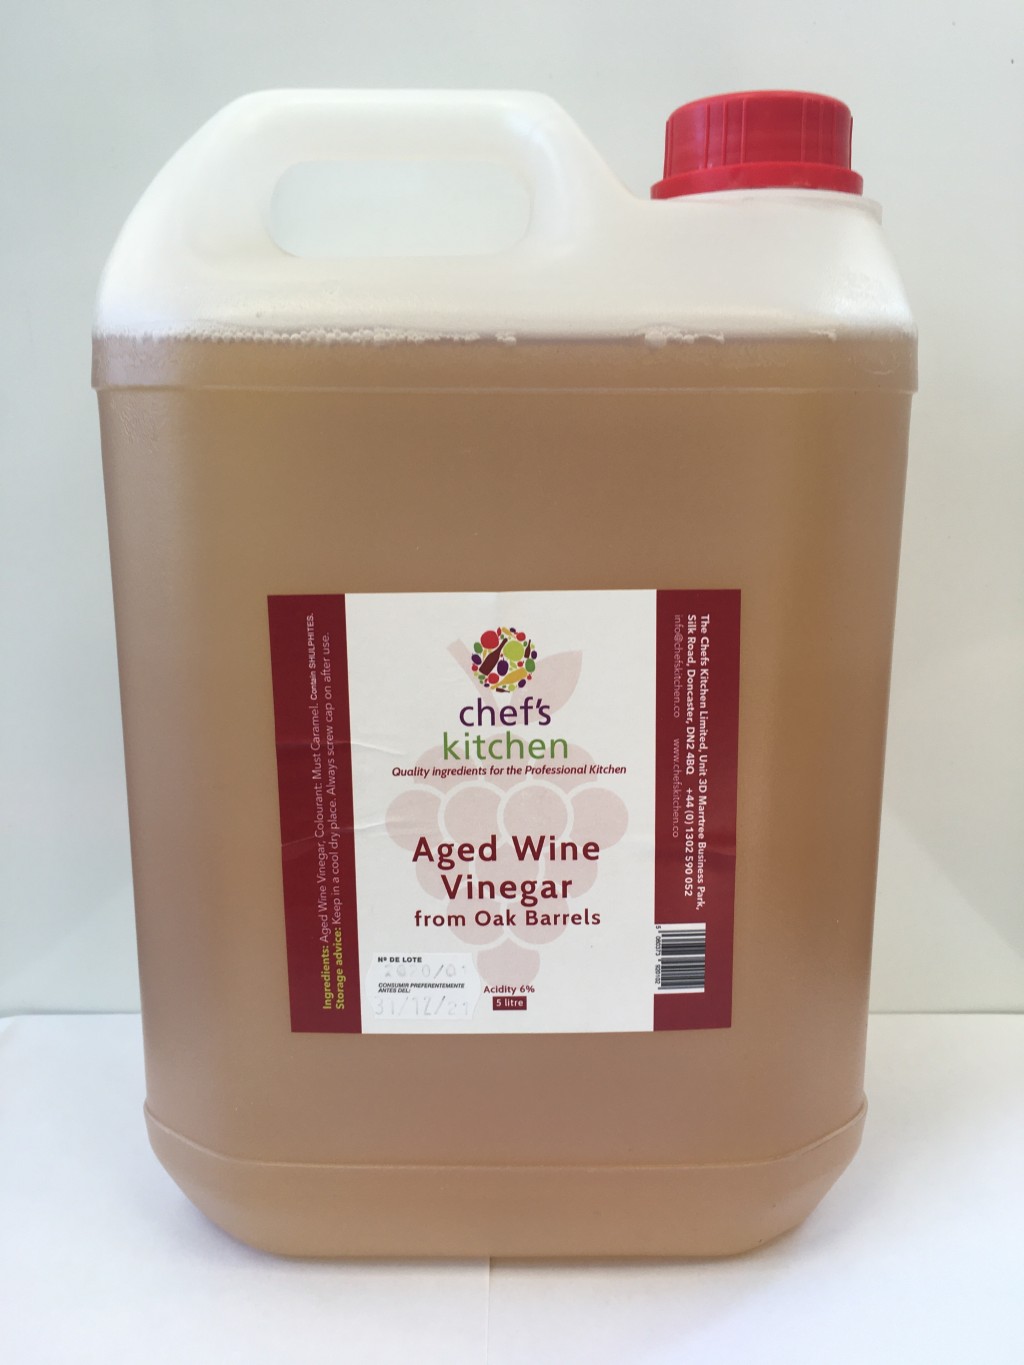 Aged Wine (Sherry) Vinegar